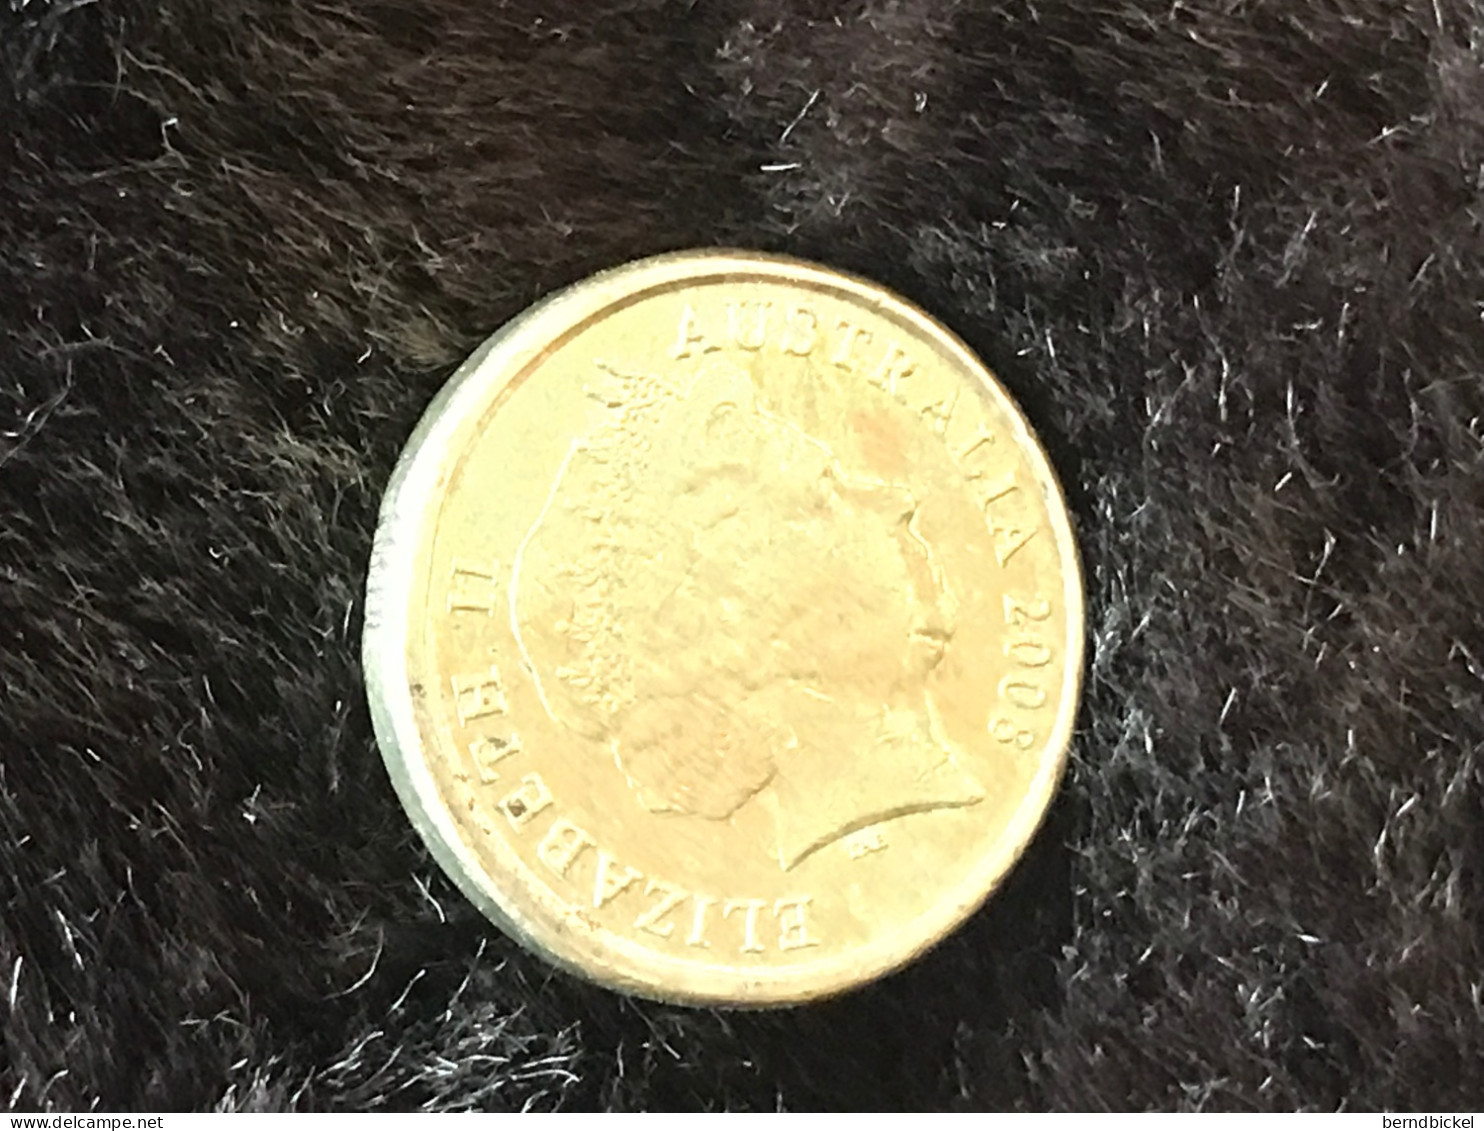 Münze Münzen Umlaufmünze Australien 2 Dollar 2008 - 2 Dollars